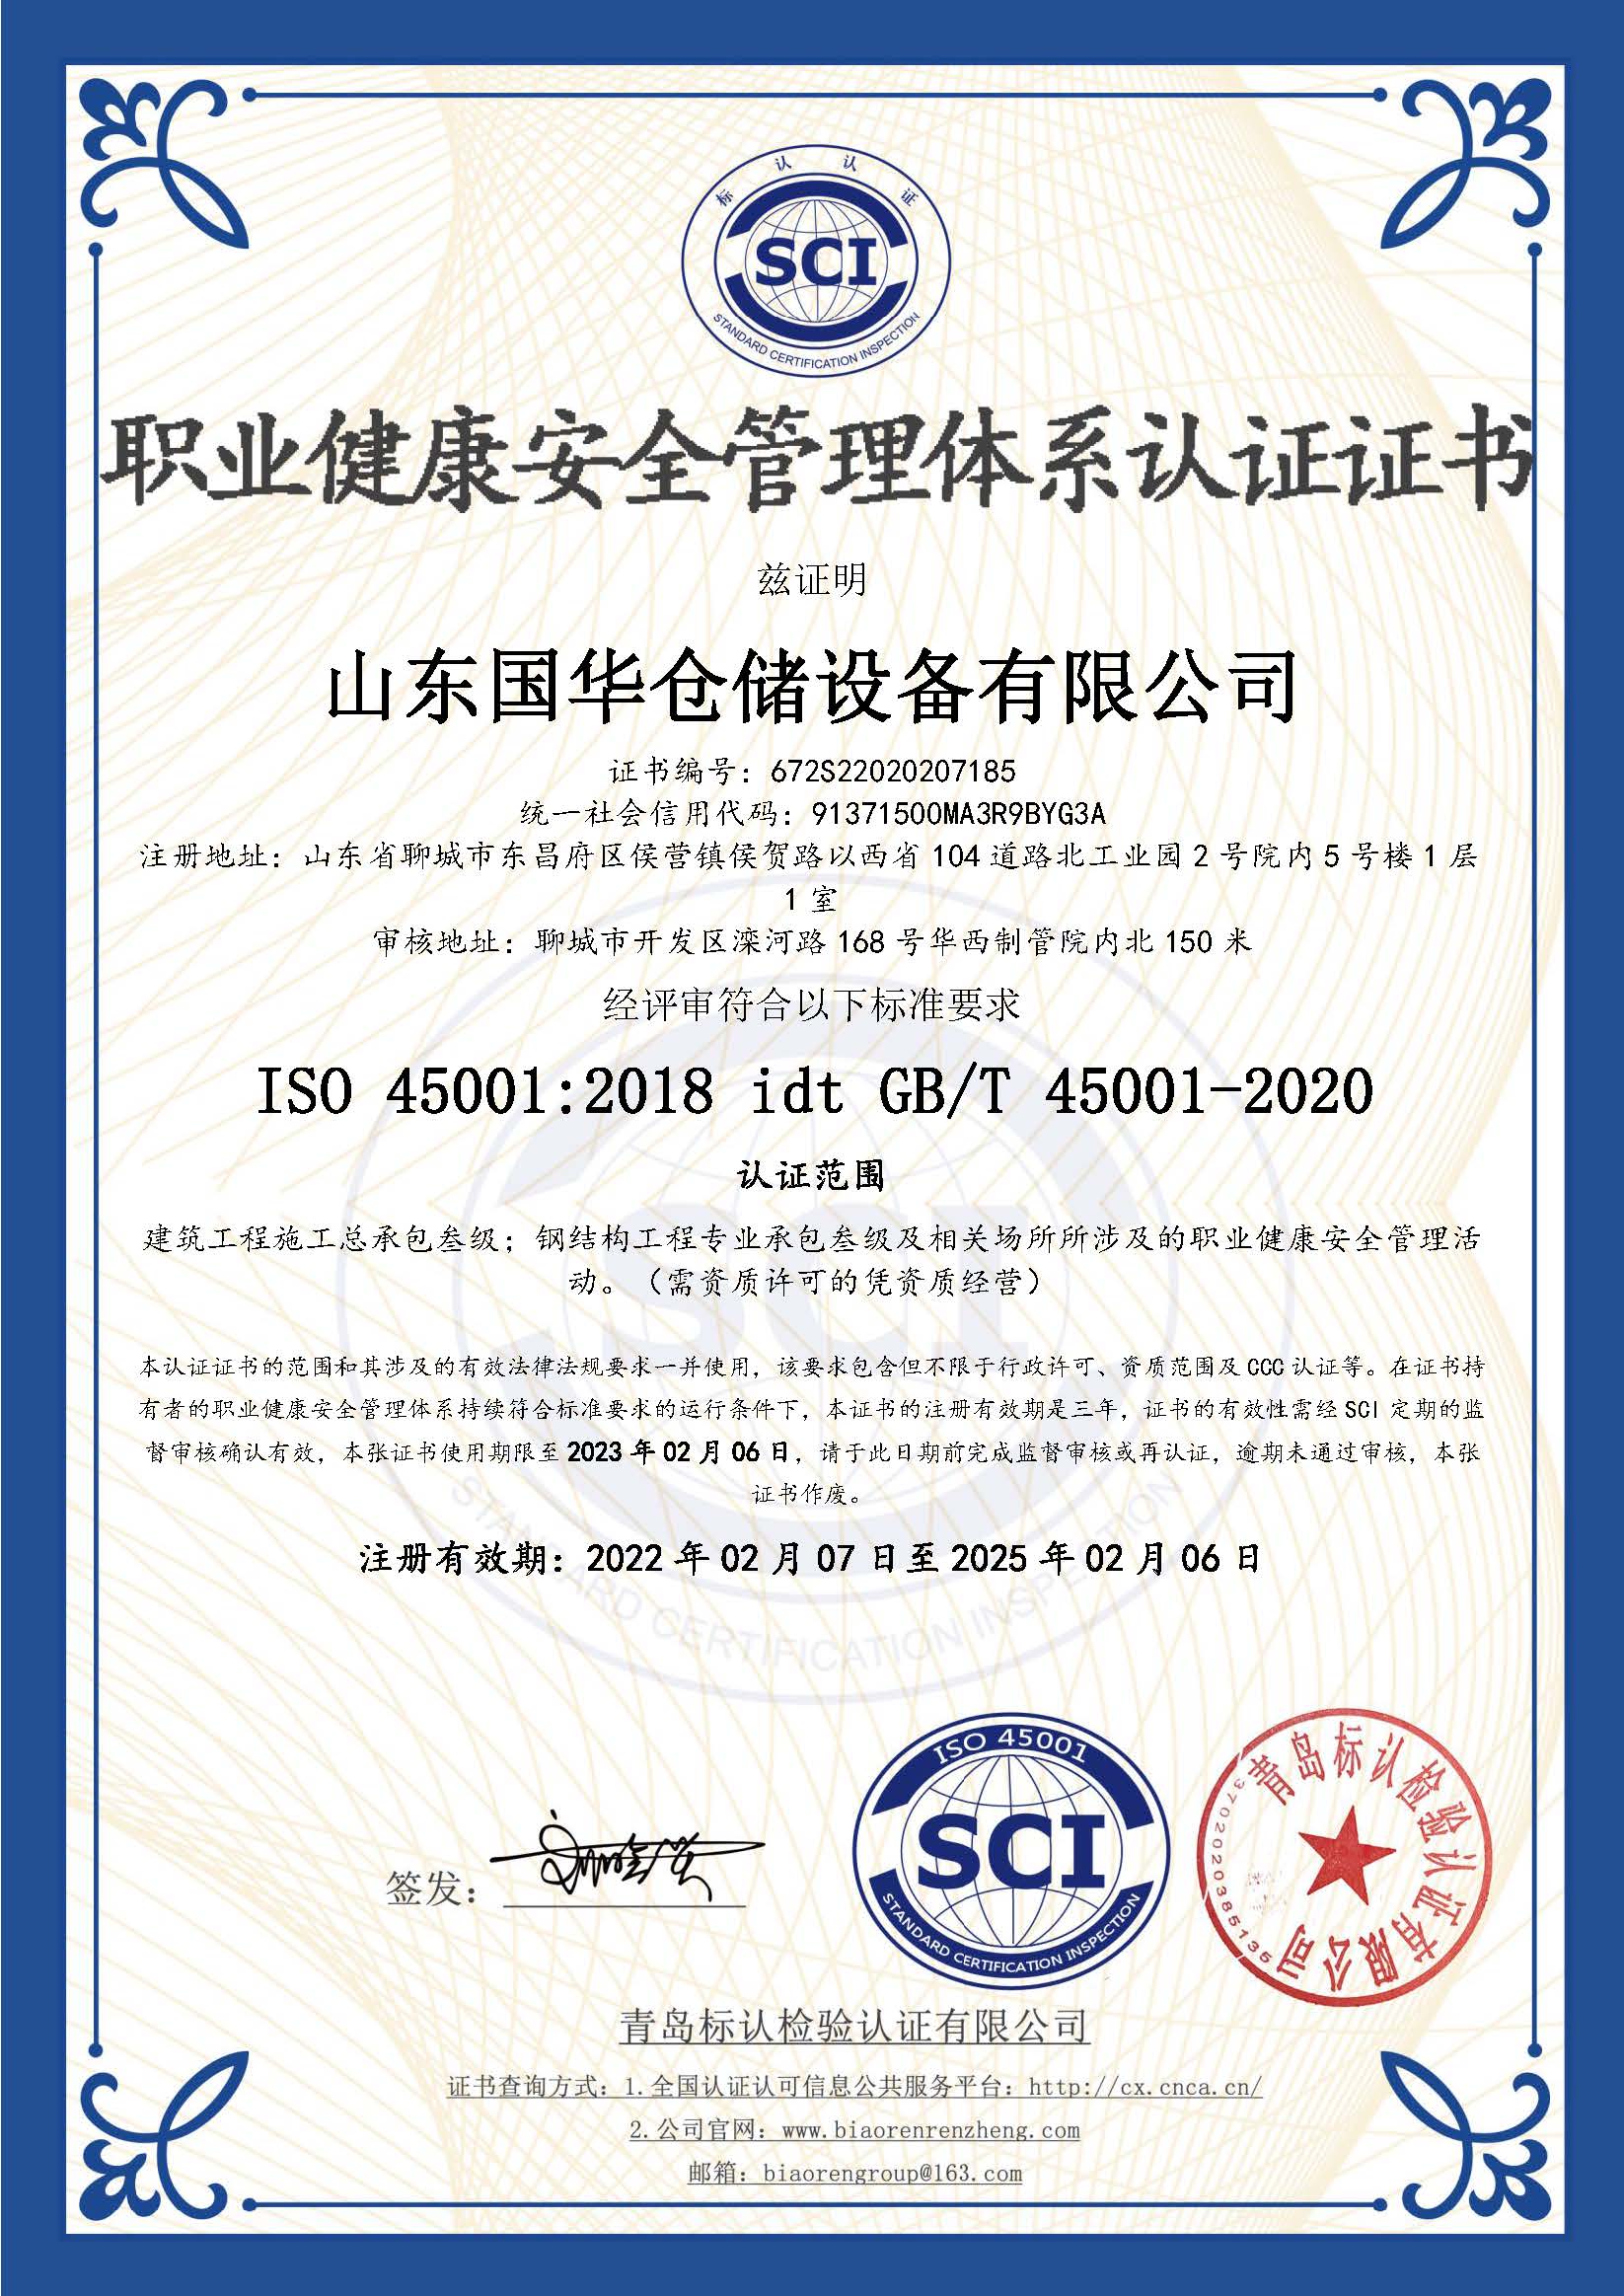 丽江钢板仓职业健康安全管理体系认证证书